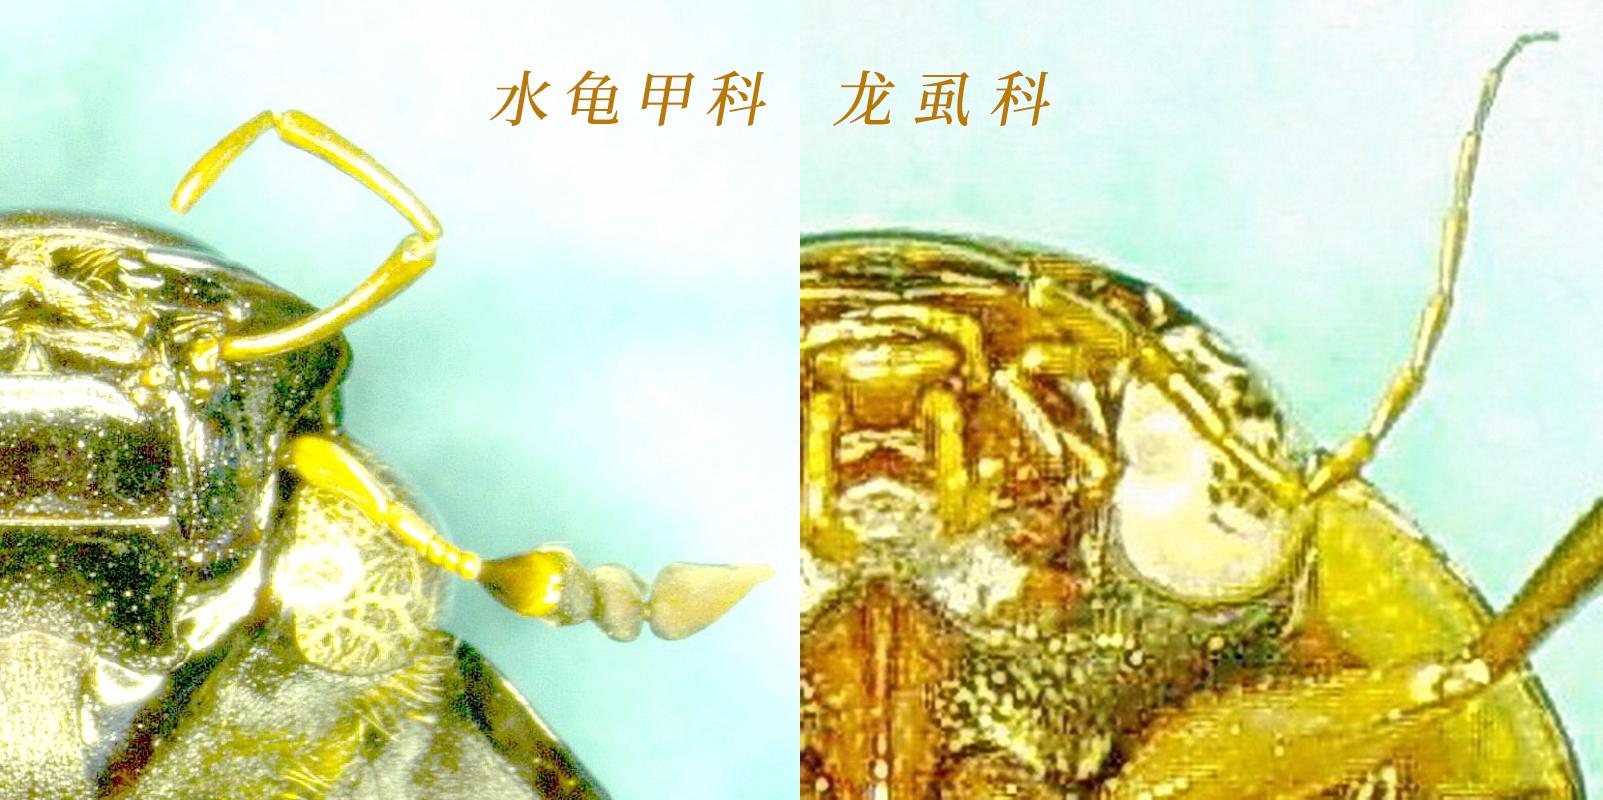 金龟子图片【高清】_病虫草图_191农资人 - 农技社区服务平台